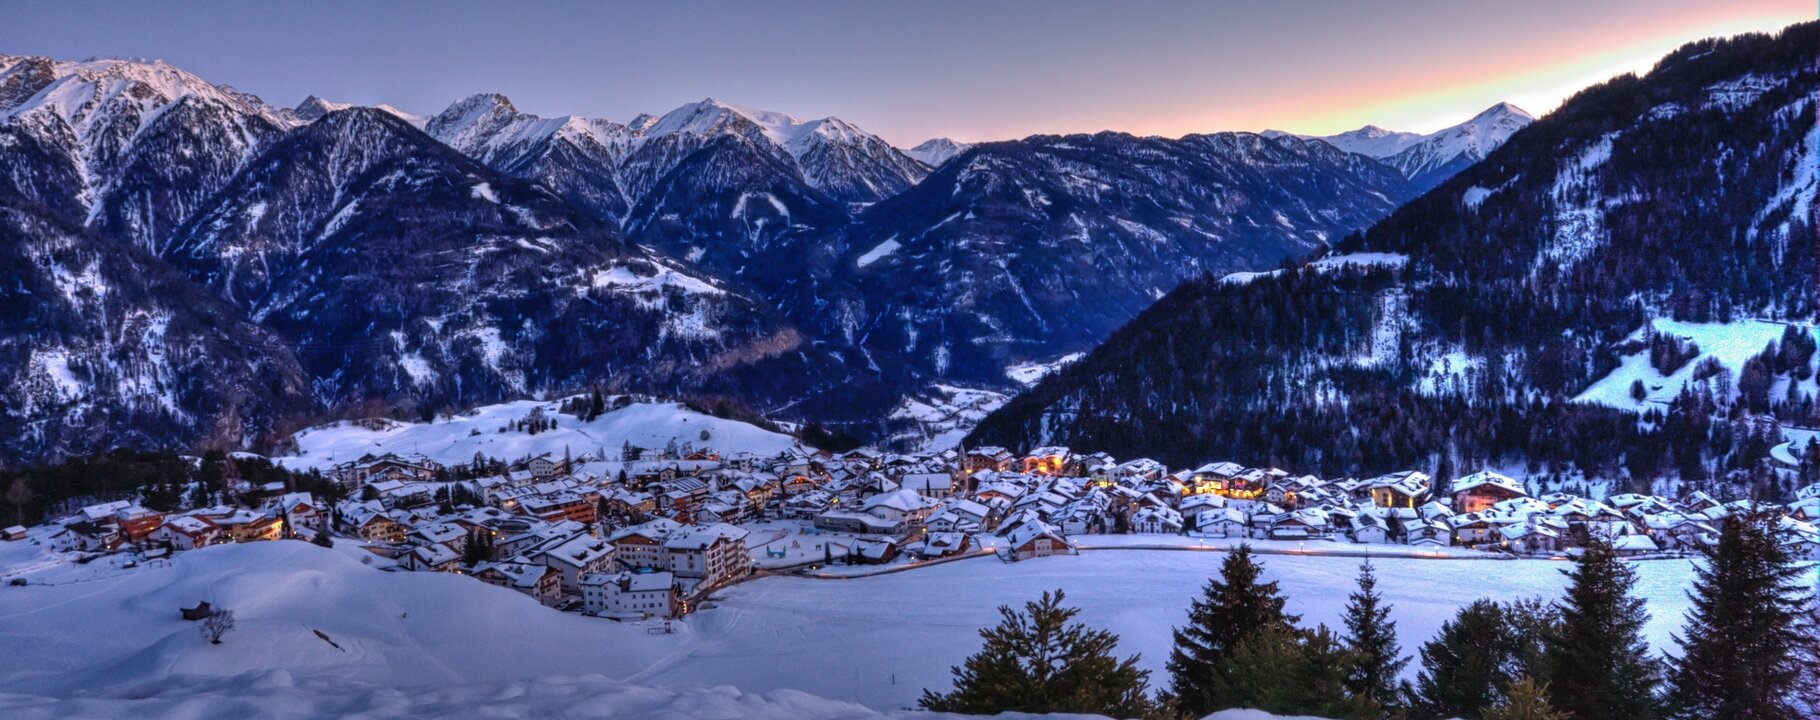 Abendstimmung in Serfaus im Winter | © Serfaus-Fiss-Ladis/Tirol